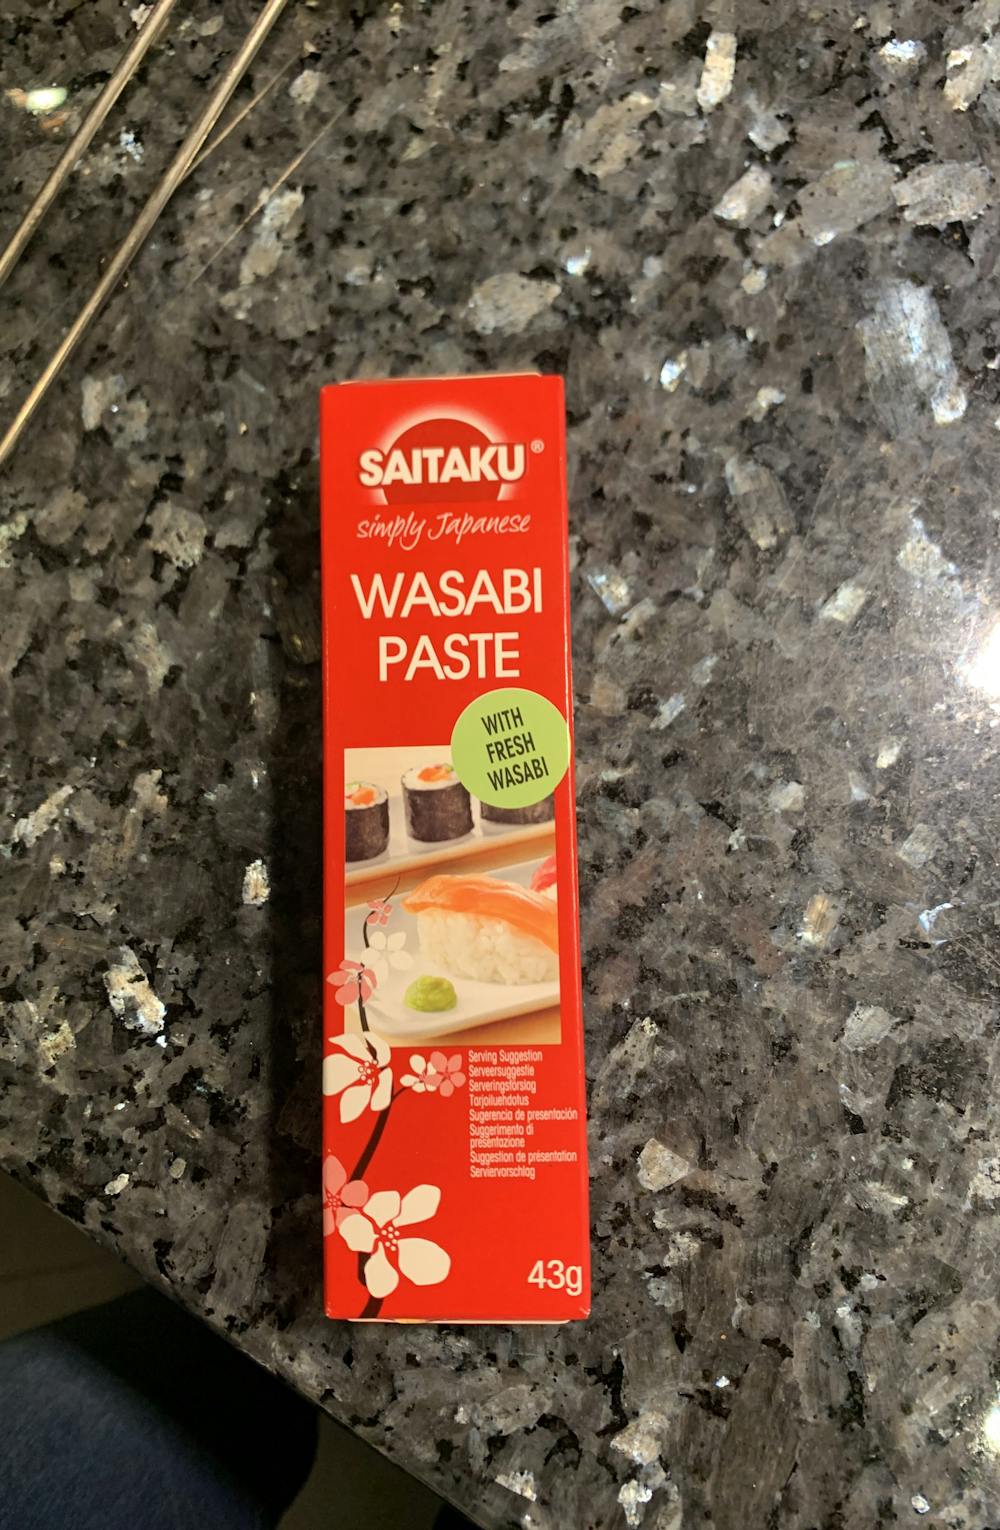 Wasabi paste, Saitaku